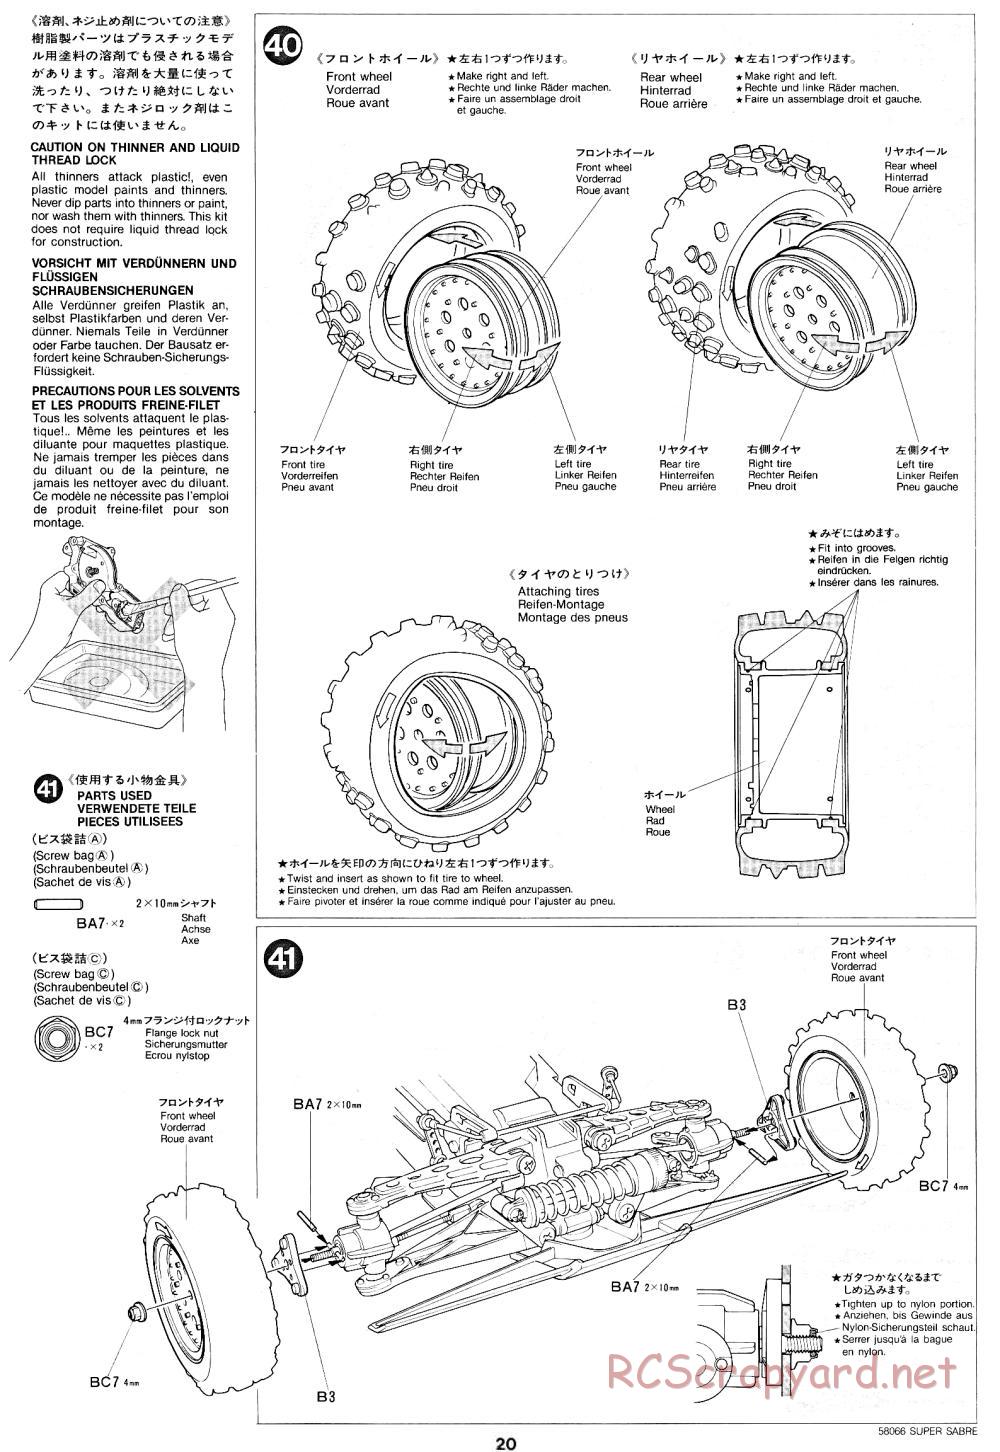 Tamiya - Super Sabre - 58066 - Manual - Page 20